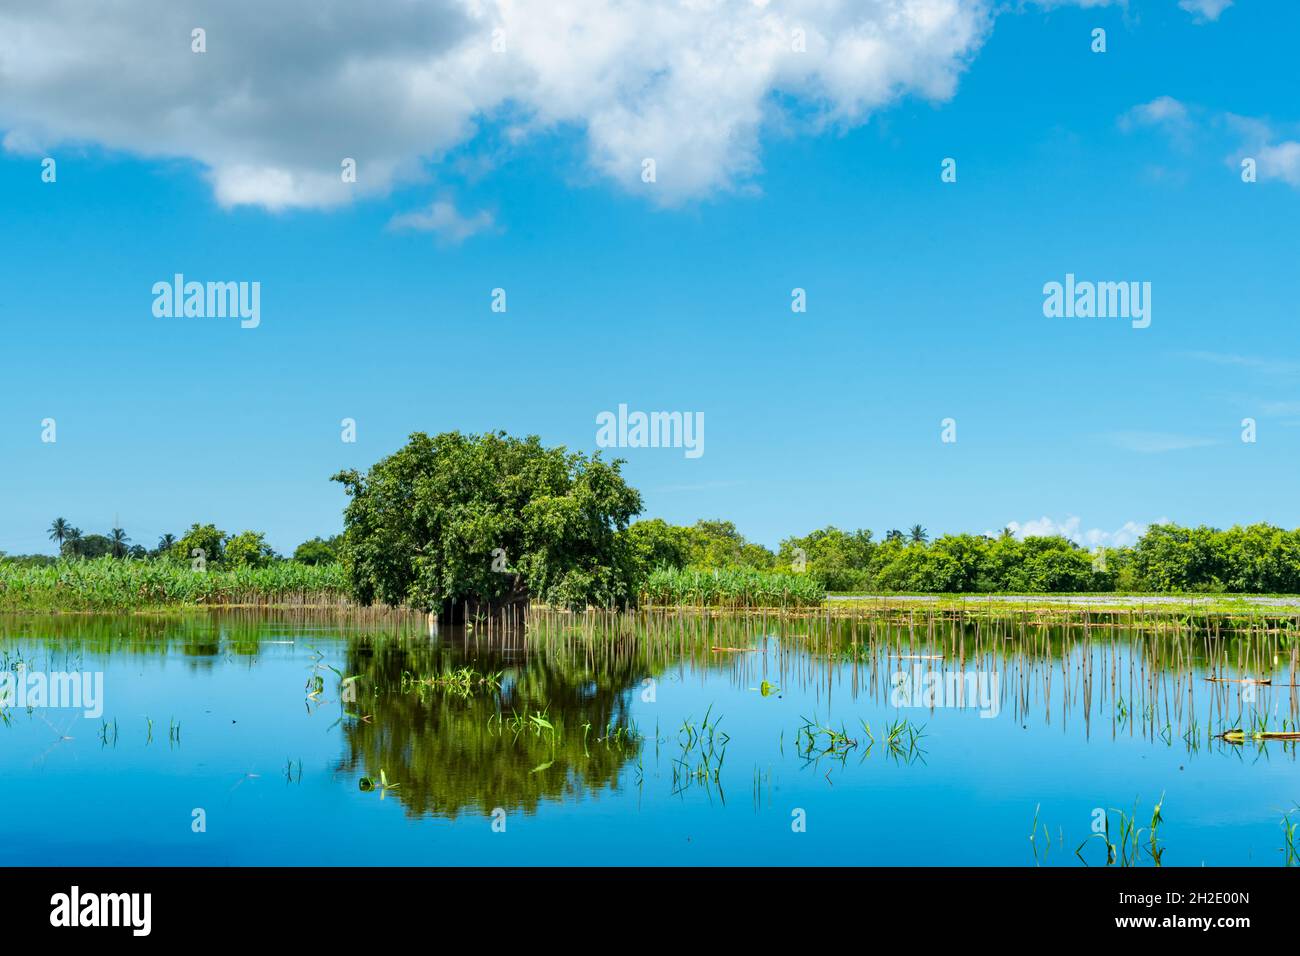 Landschaft eines einzelnen Baumes in einem Teich mit Reflexion und bewölktem Himmel auf der karibischen Insel Trinidad. Stockfoto